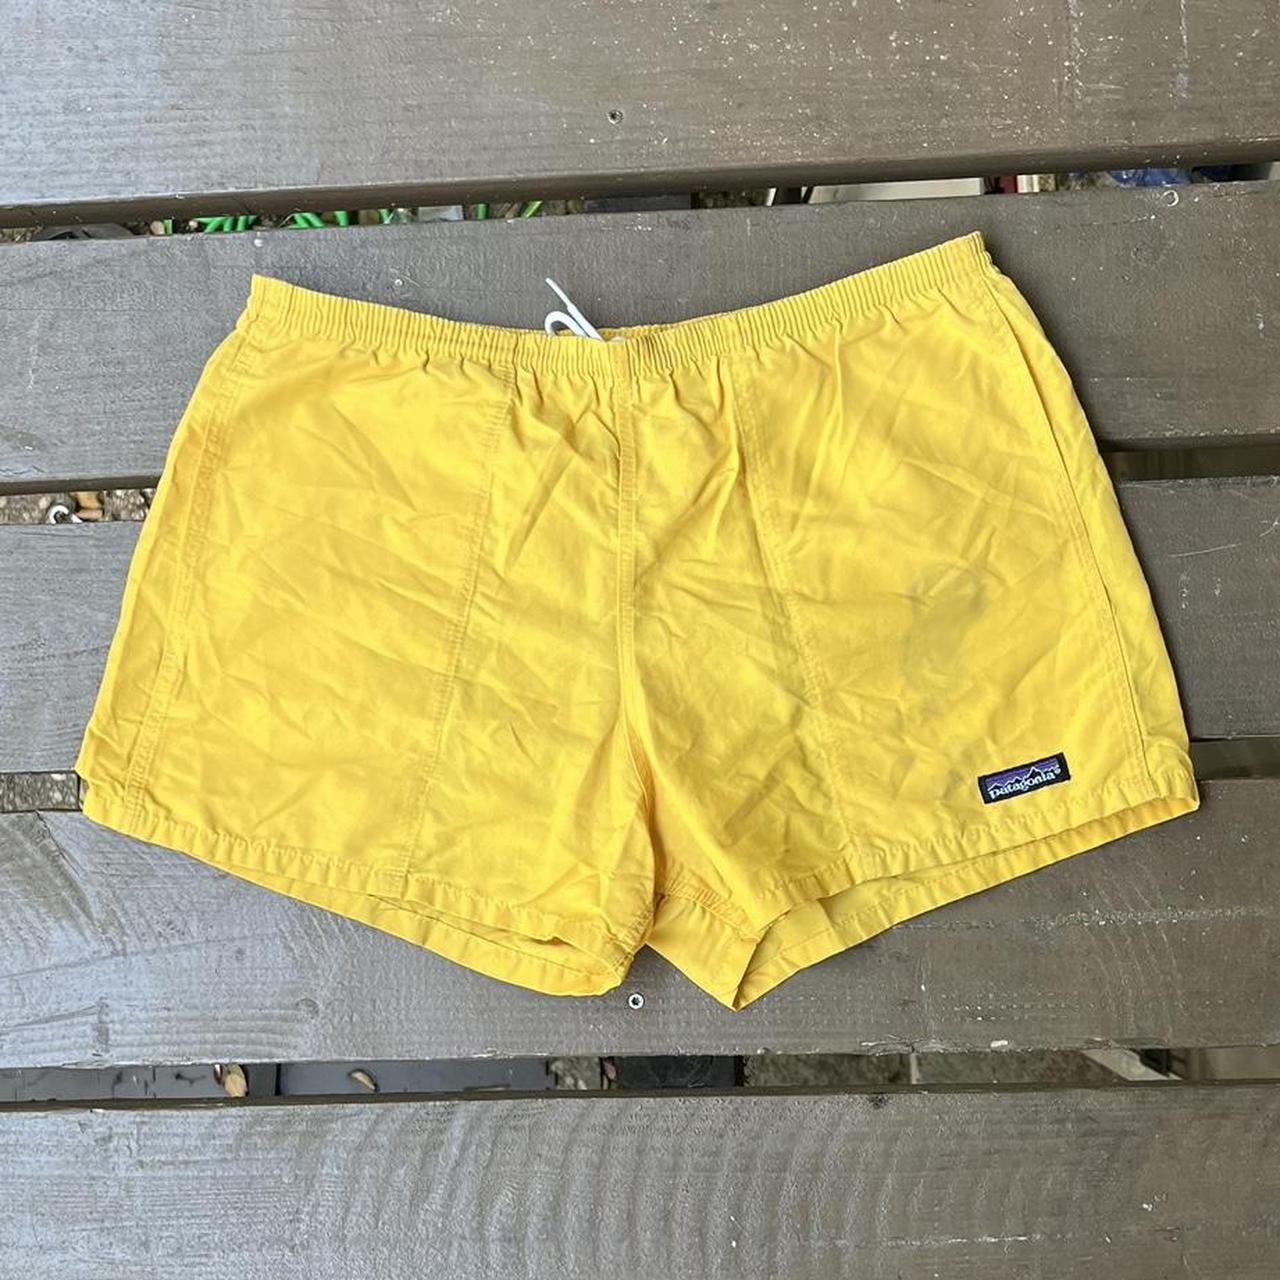 Patagonia shorts-men - Depop